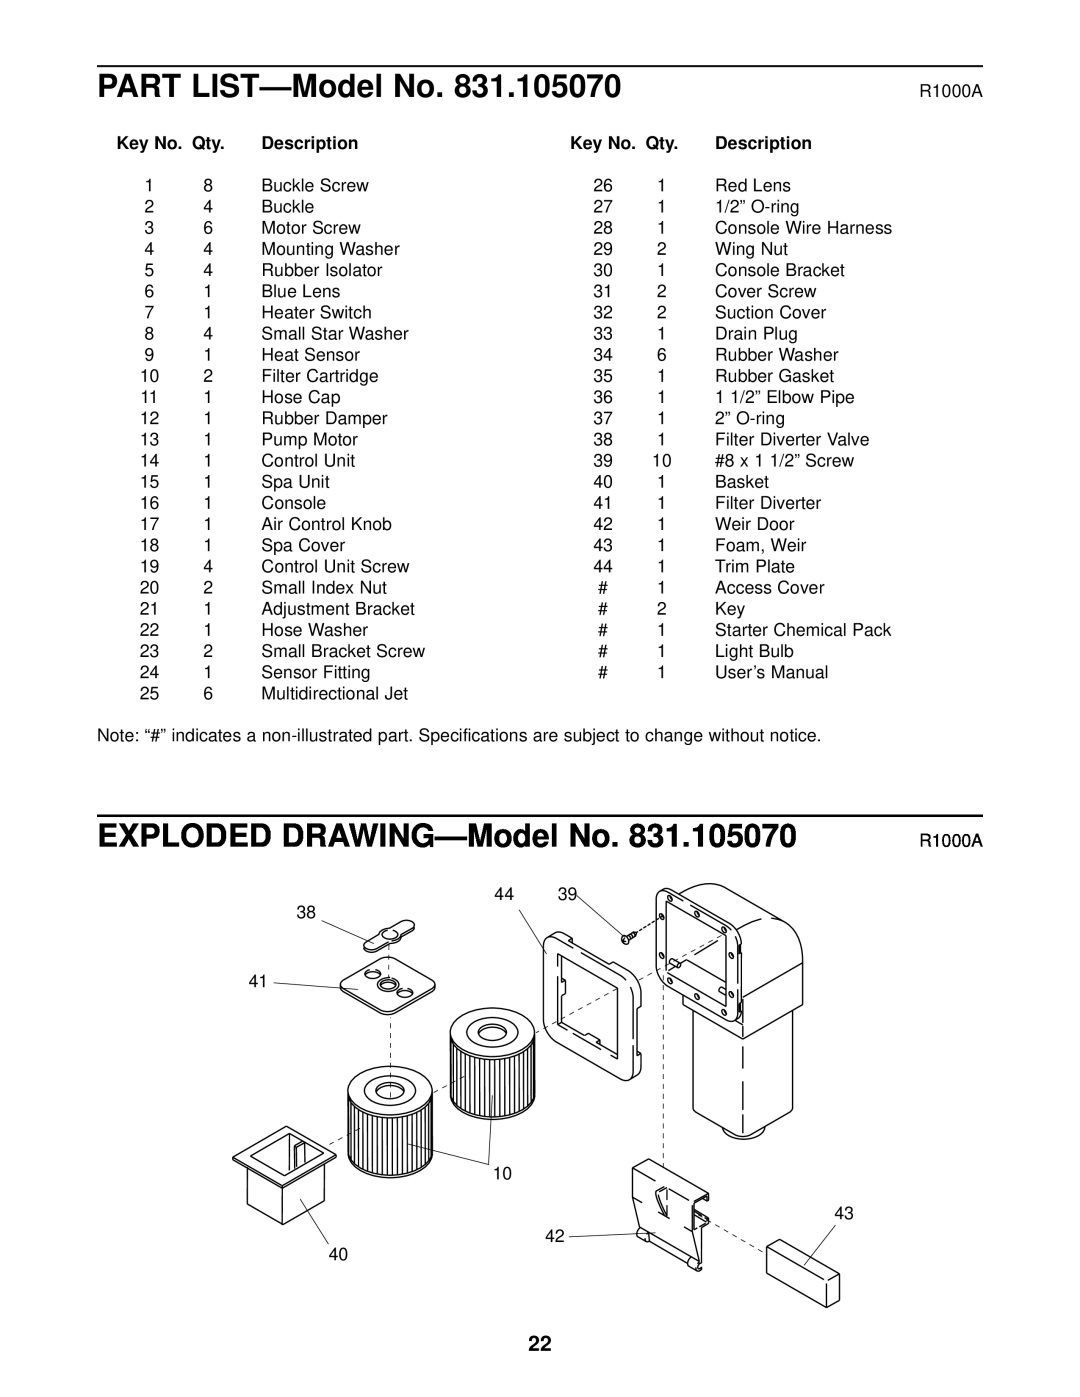 Inter-Tel 831.10507 user manual EXPLODED DRAWING-Model No, Key No. Qty, Description, PART LIST-Model No 